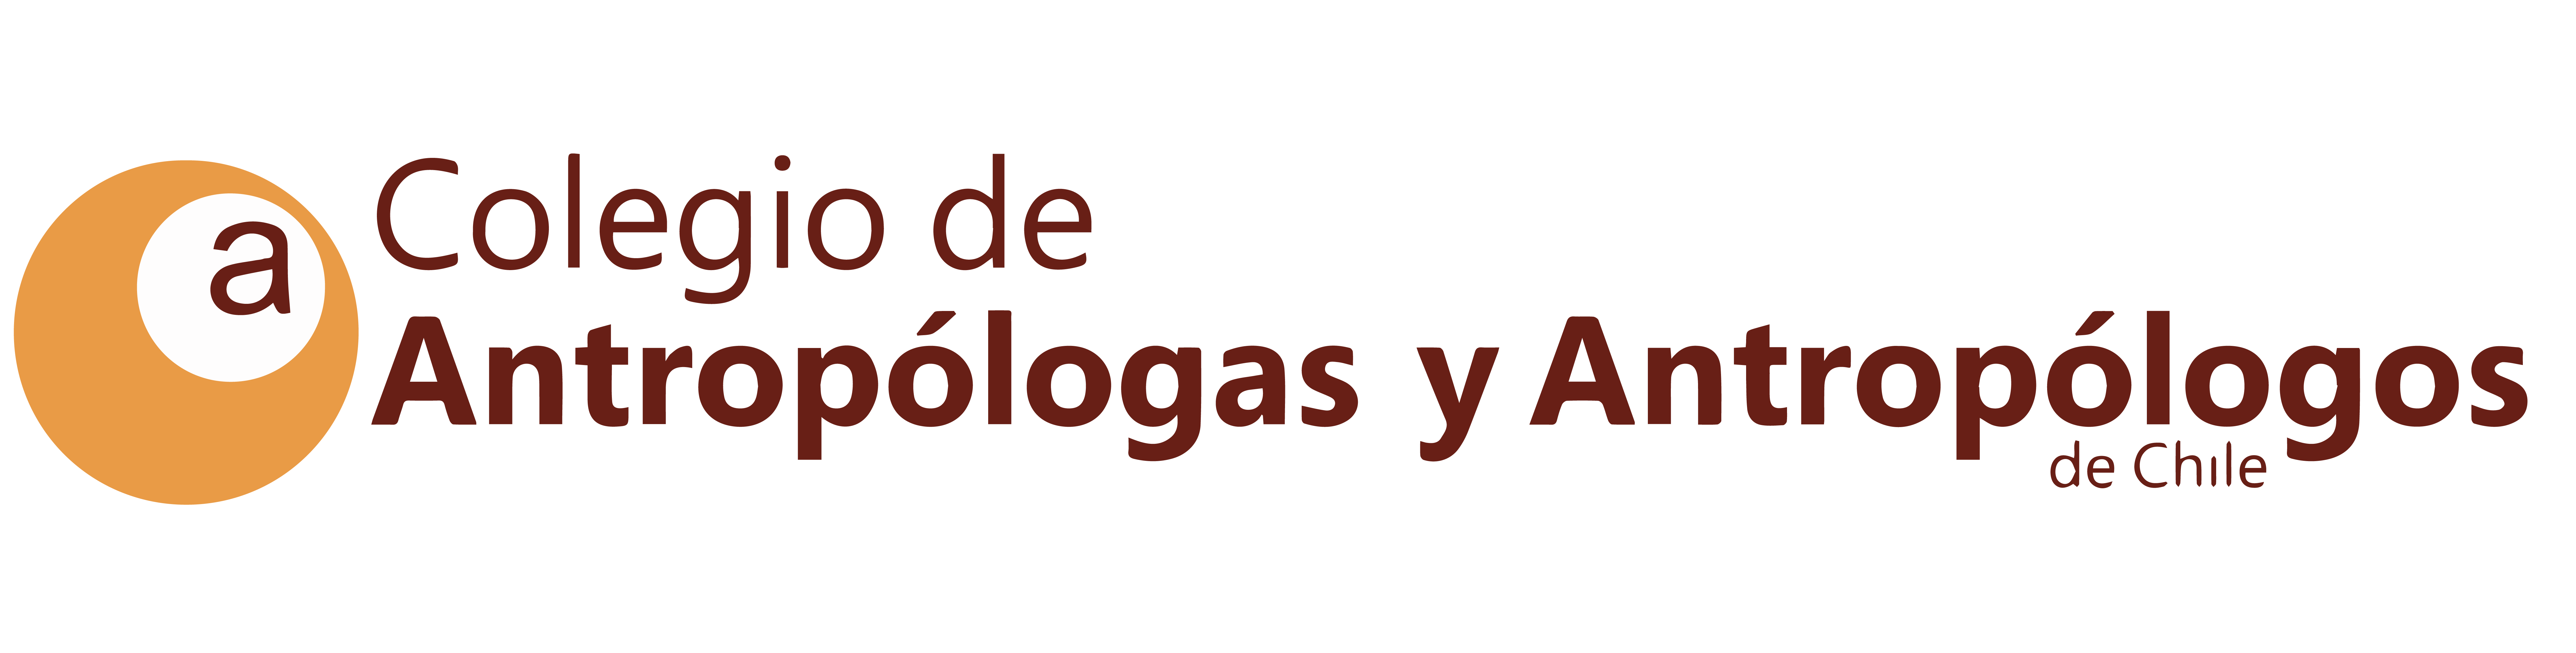 Logo Colegio de Antropólogas y antropólogos de Chile